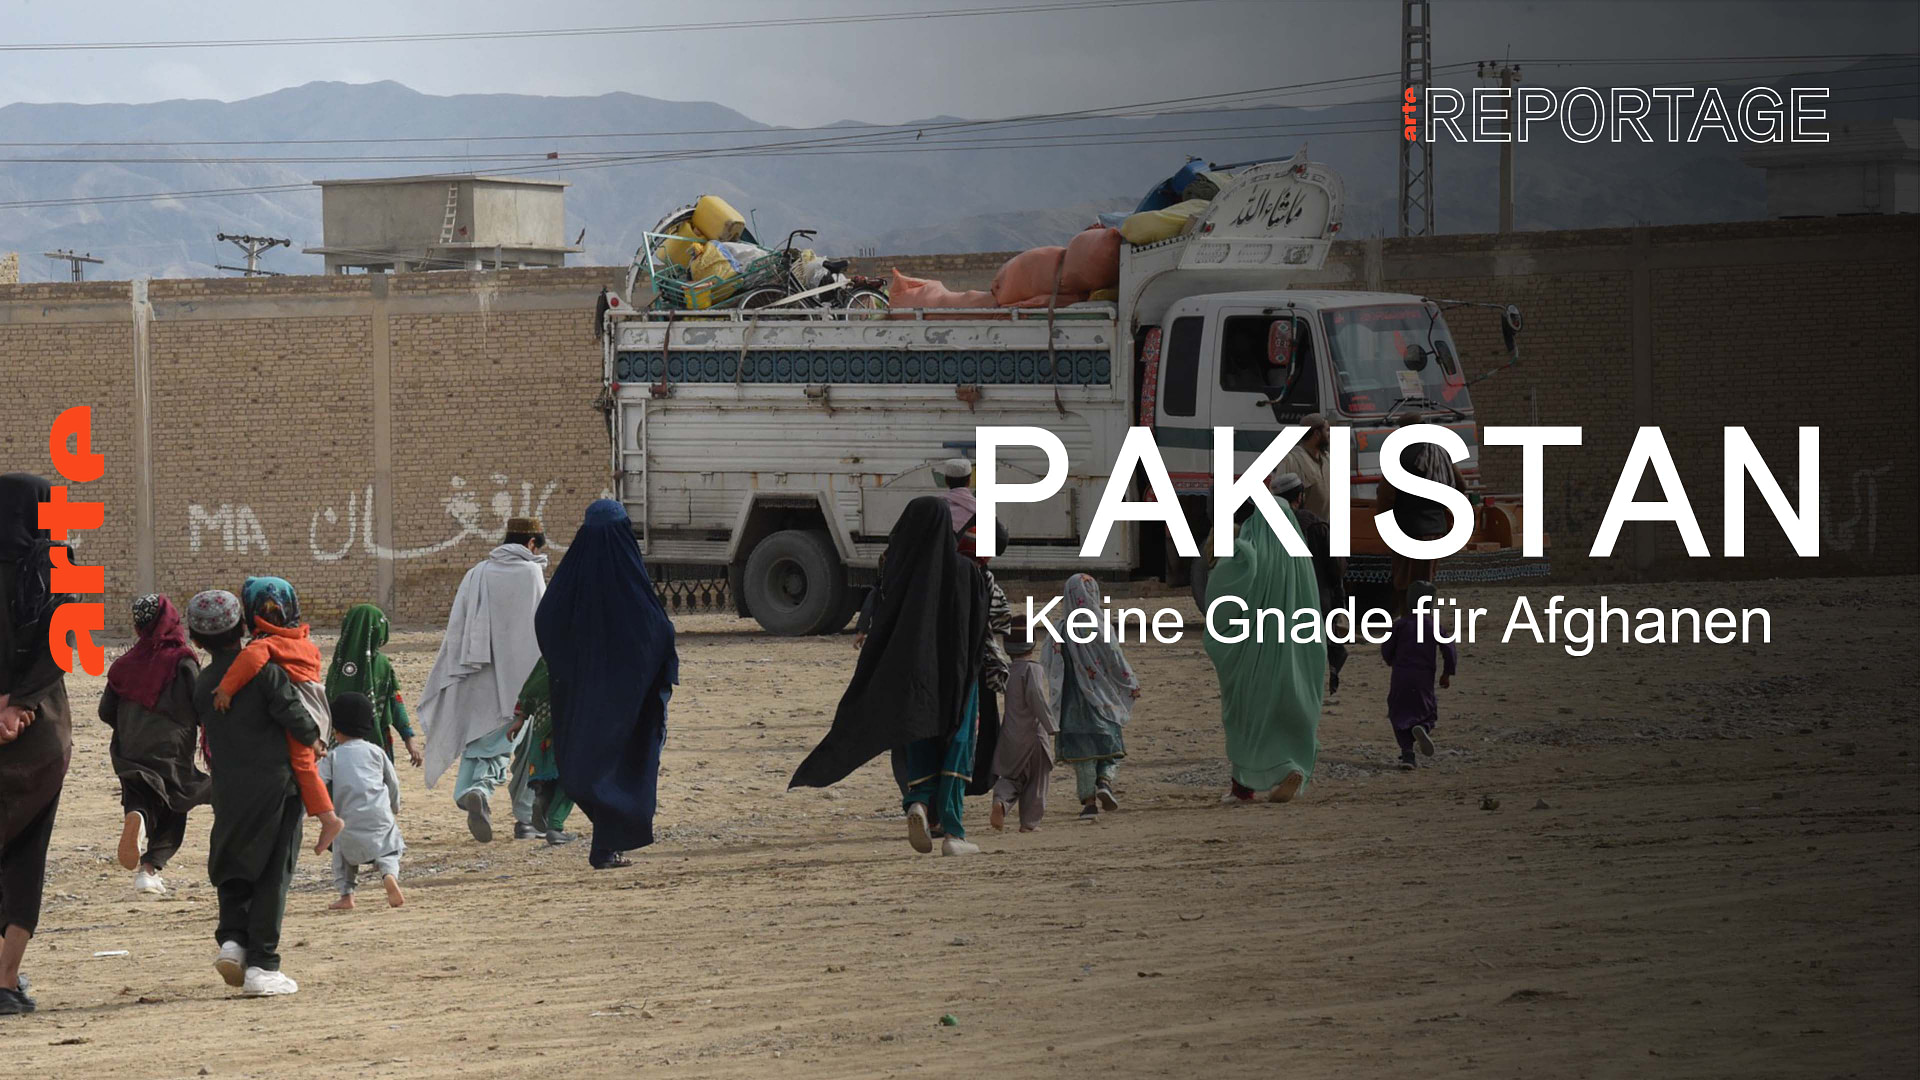 Pakistan: Keine Gnade für Afghanen